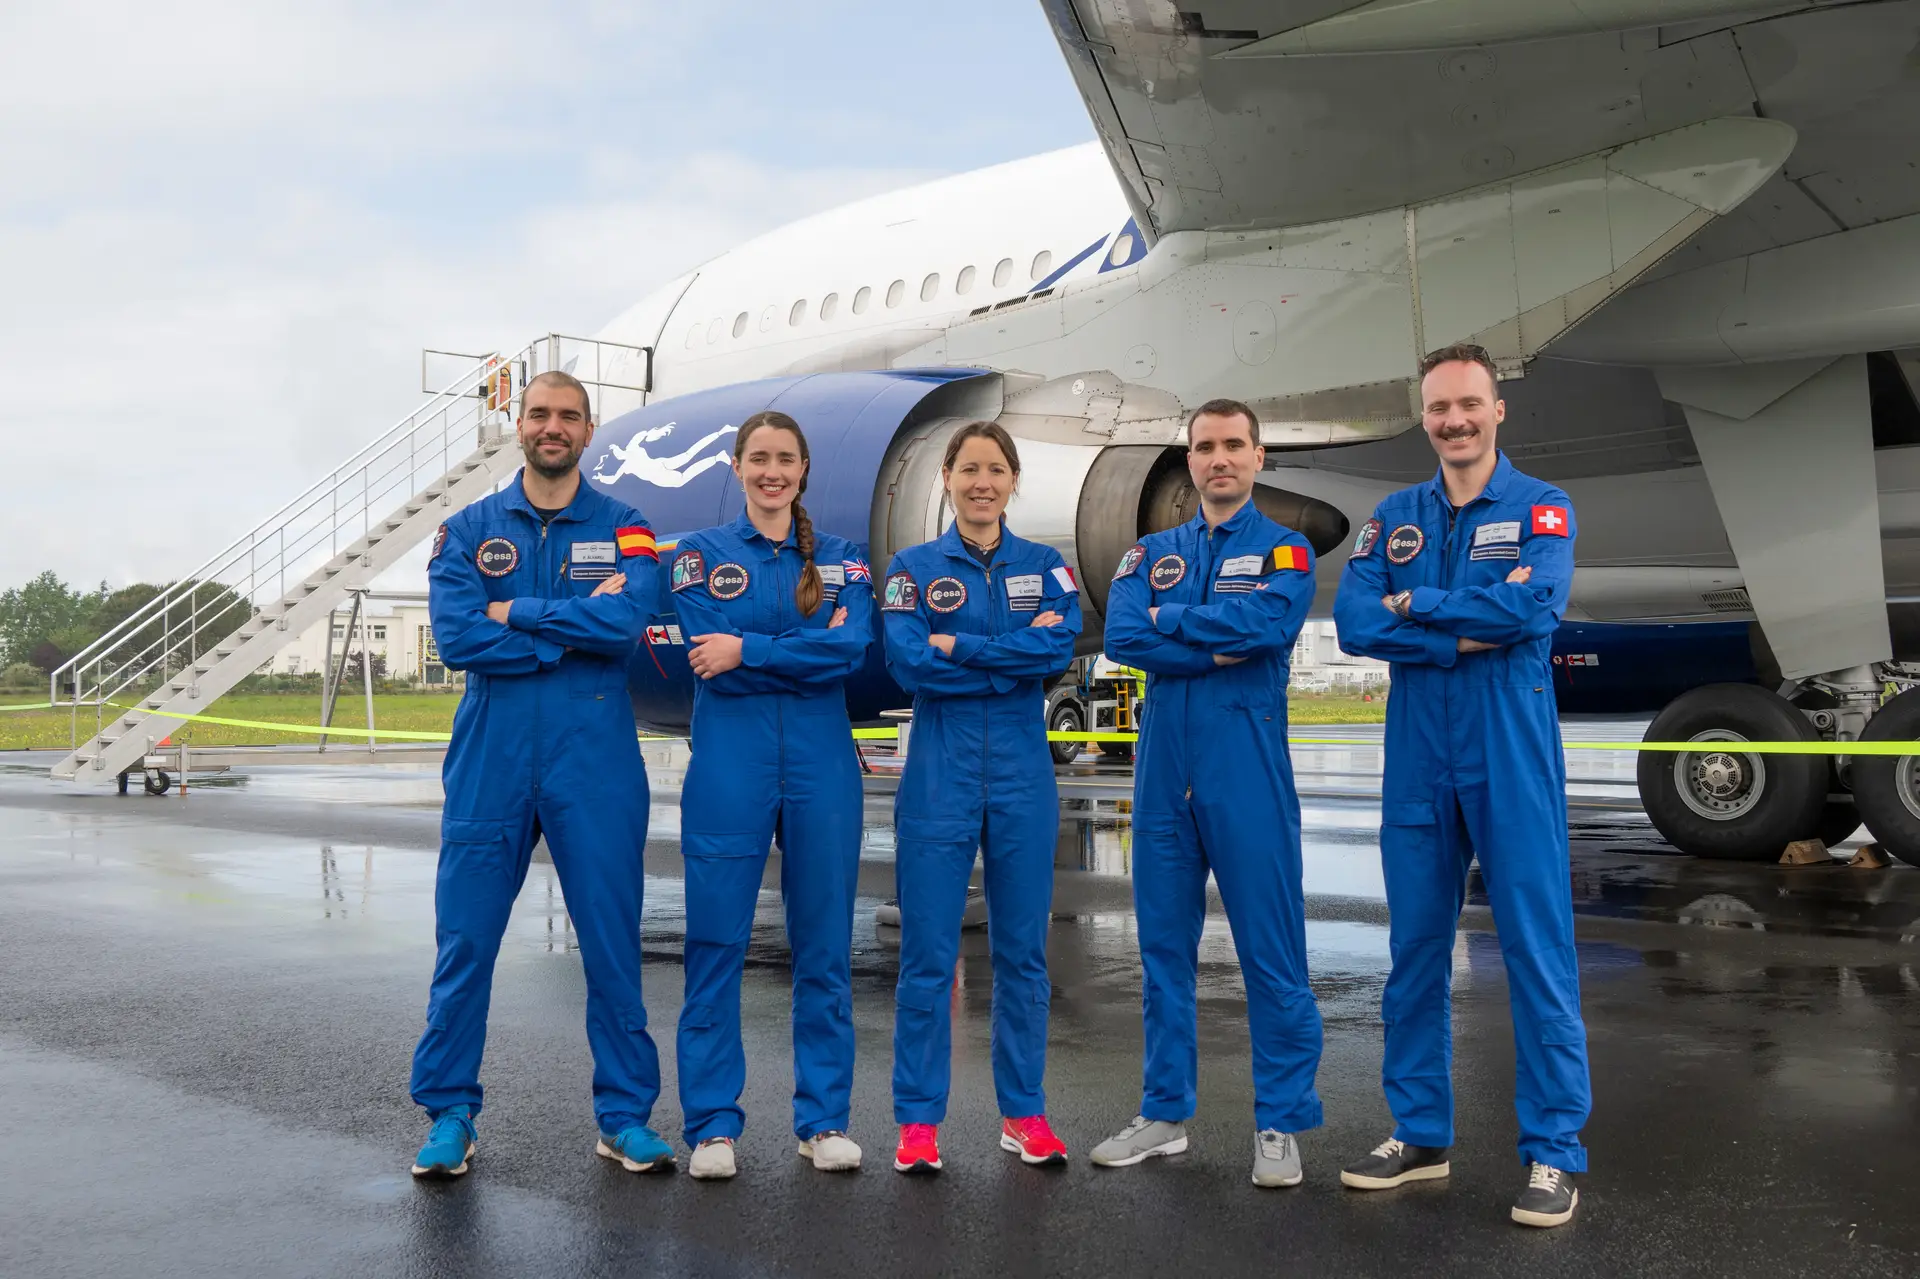 Os cinco novos astronautas da ESA terminaram a formação com distinção. Pablo Álvarez Fernández, Rosemary Coogan, Sophie Adenot, Raphaël Liégeois e Marco Sieber estão prontos para missões espaciais.